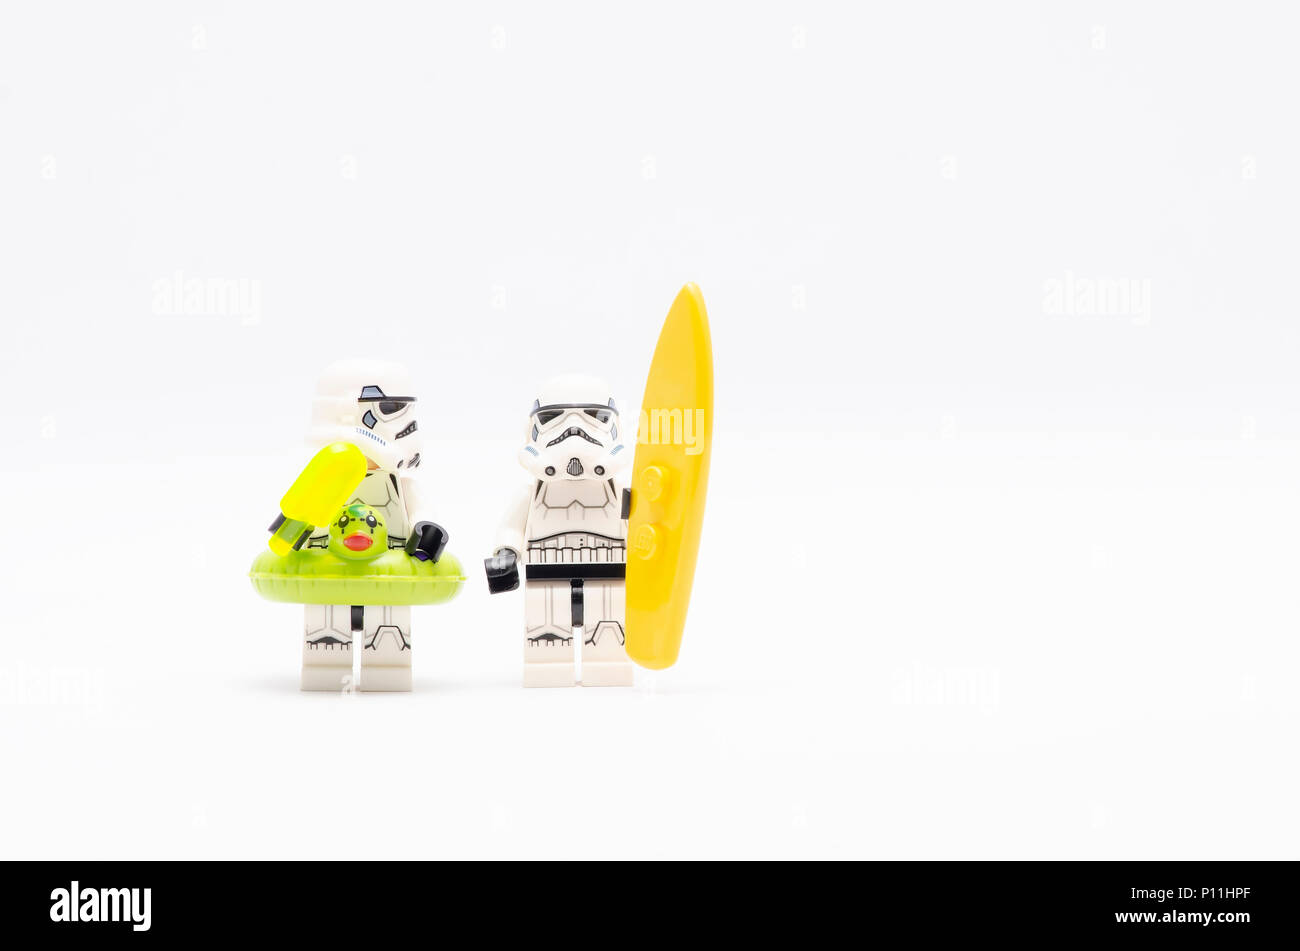 Mini Abbildung von Storm troopers Holding Eis und Surfen. Lego Minifiguren sind von der Lego Gruppe hergestellt. Stockfoto